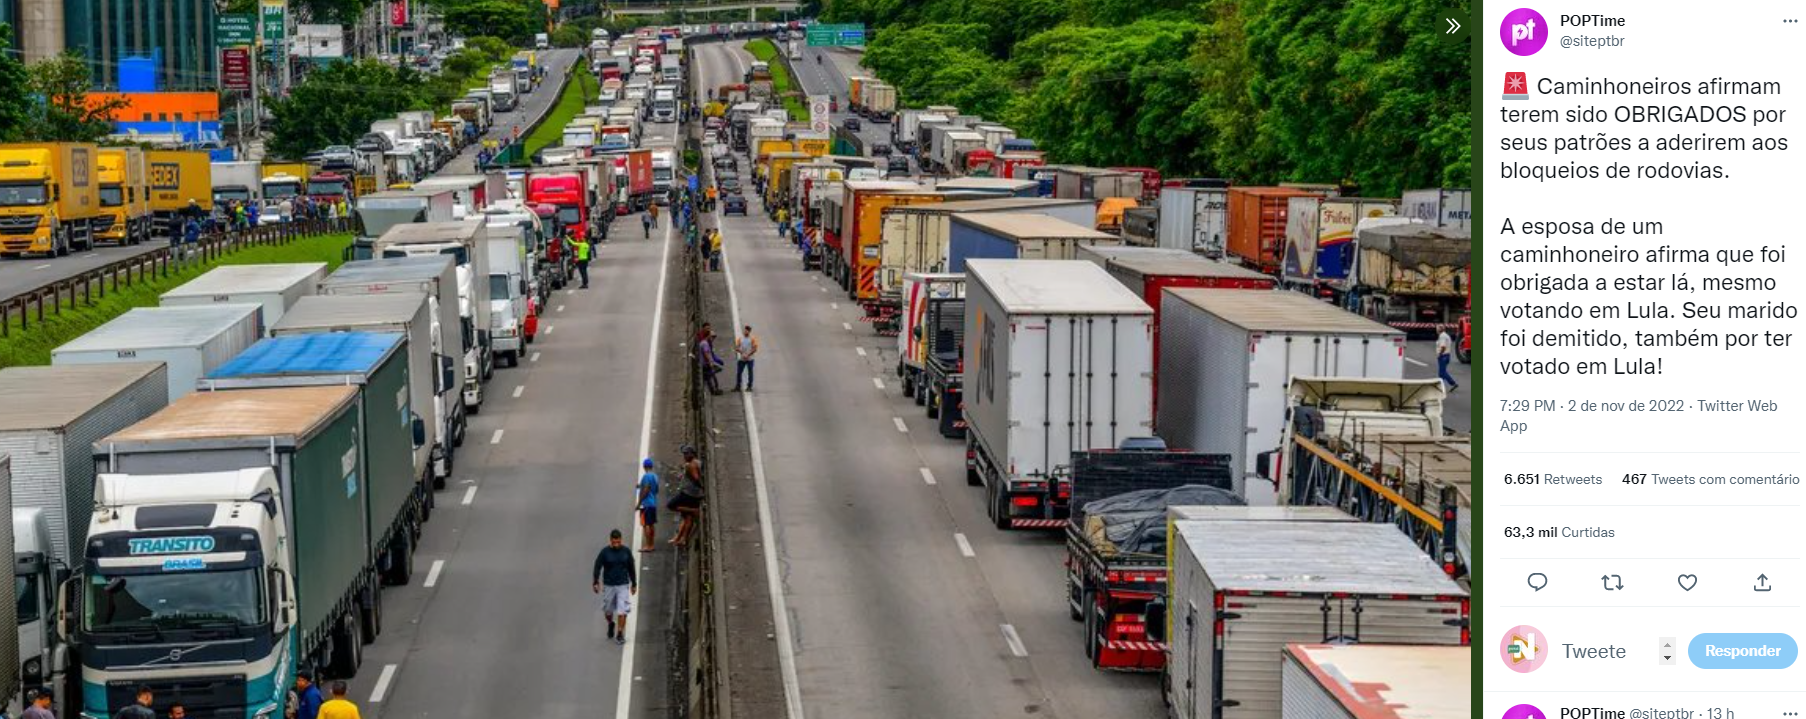 Rodovias bloqueadas no Brasil - Foto: Reprodução/Twitter@siteptbr